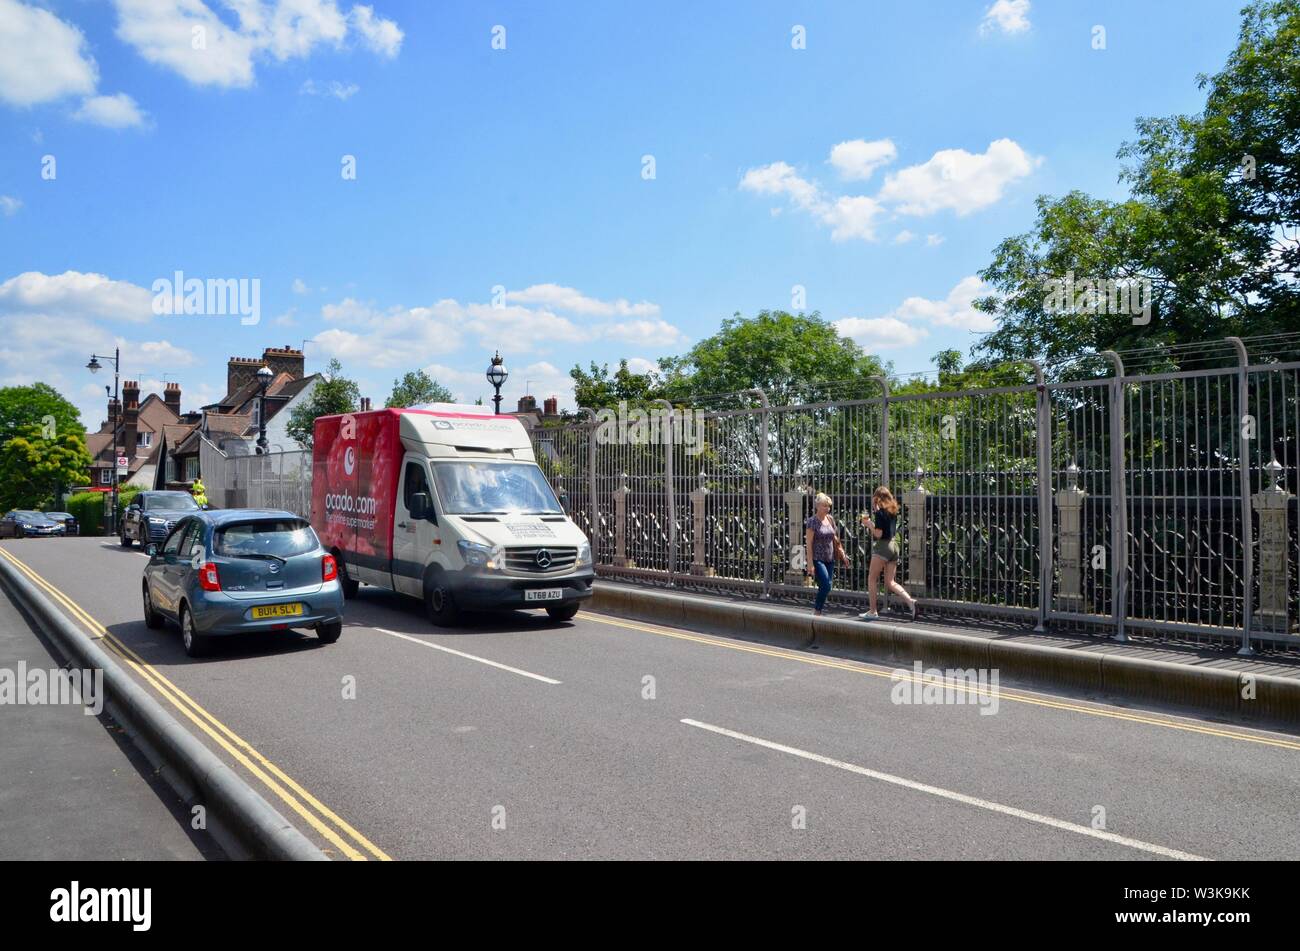 Appena eretto scherma ad Archway road bridge cerca di prevenire i suicidi N19 Londra famoso suicidio hot spot Foto Stock